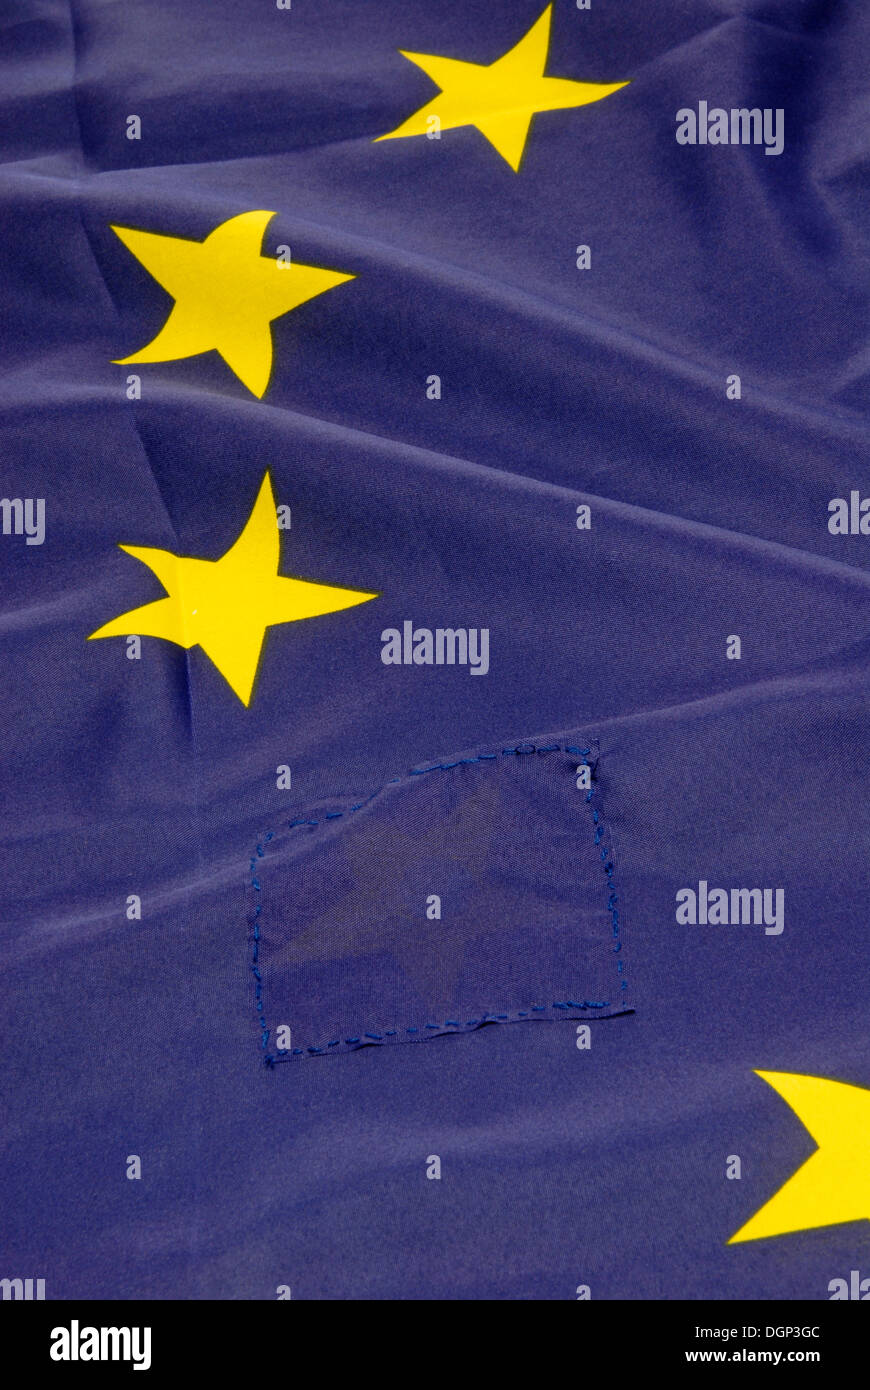 Pavillon de l'Europe avec un patch, une étoile est cousue dessus, image symbolique de la Grèce de quitter la Communauté européenne Banque D'Images